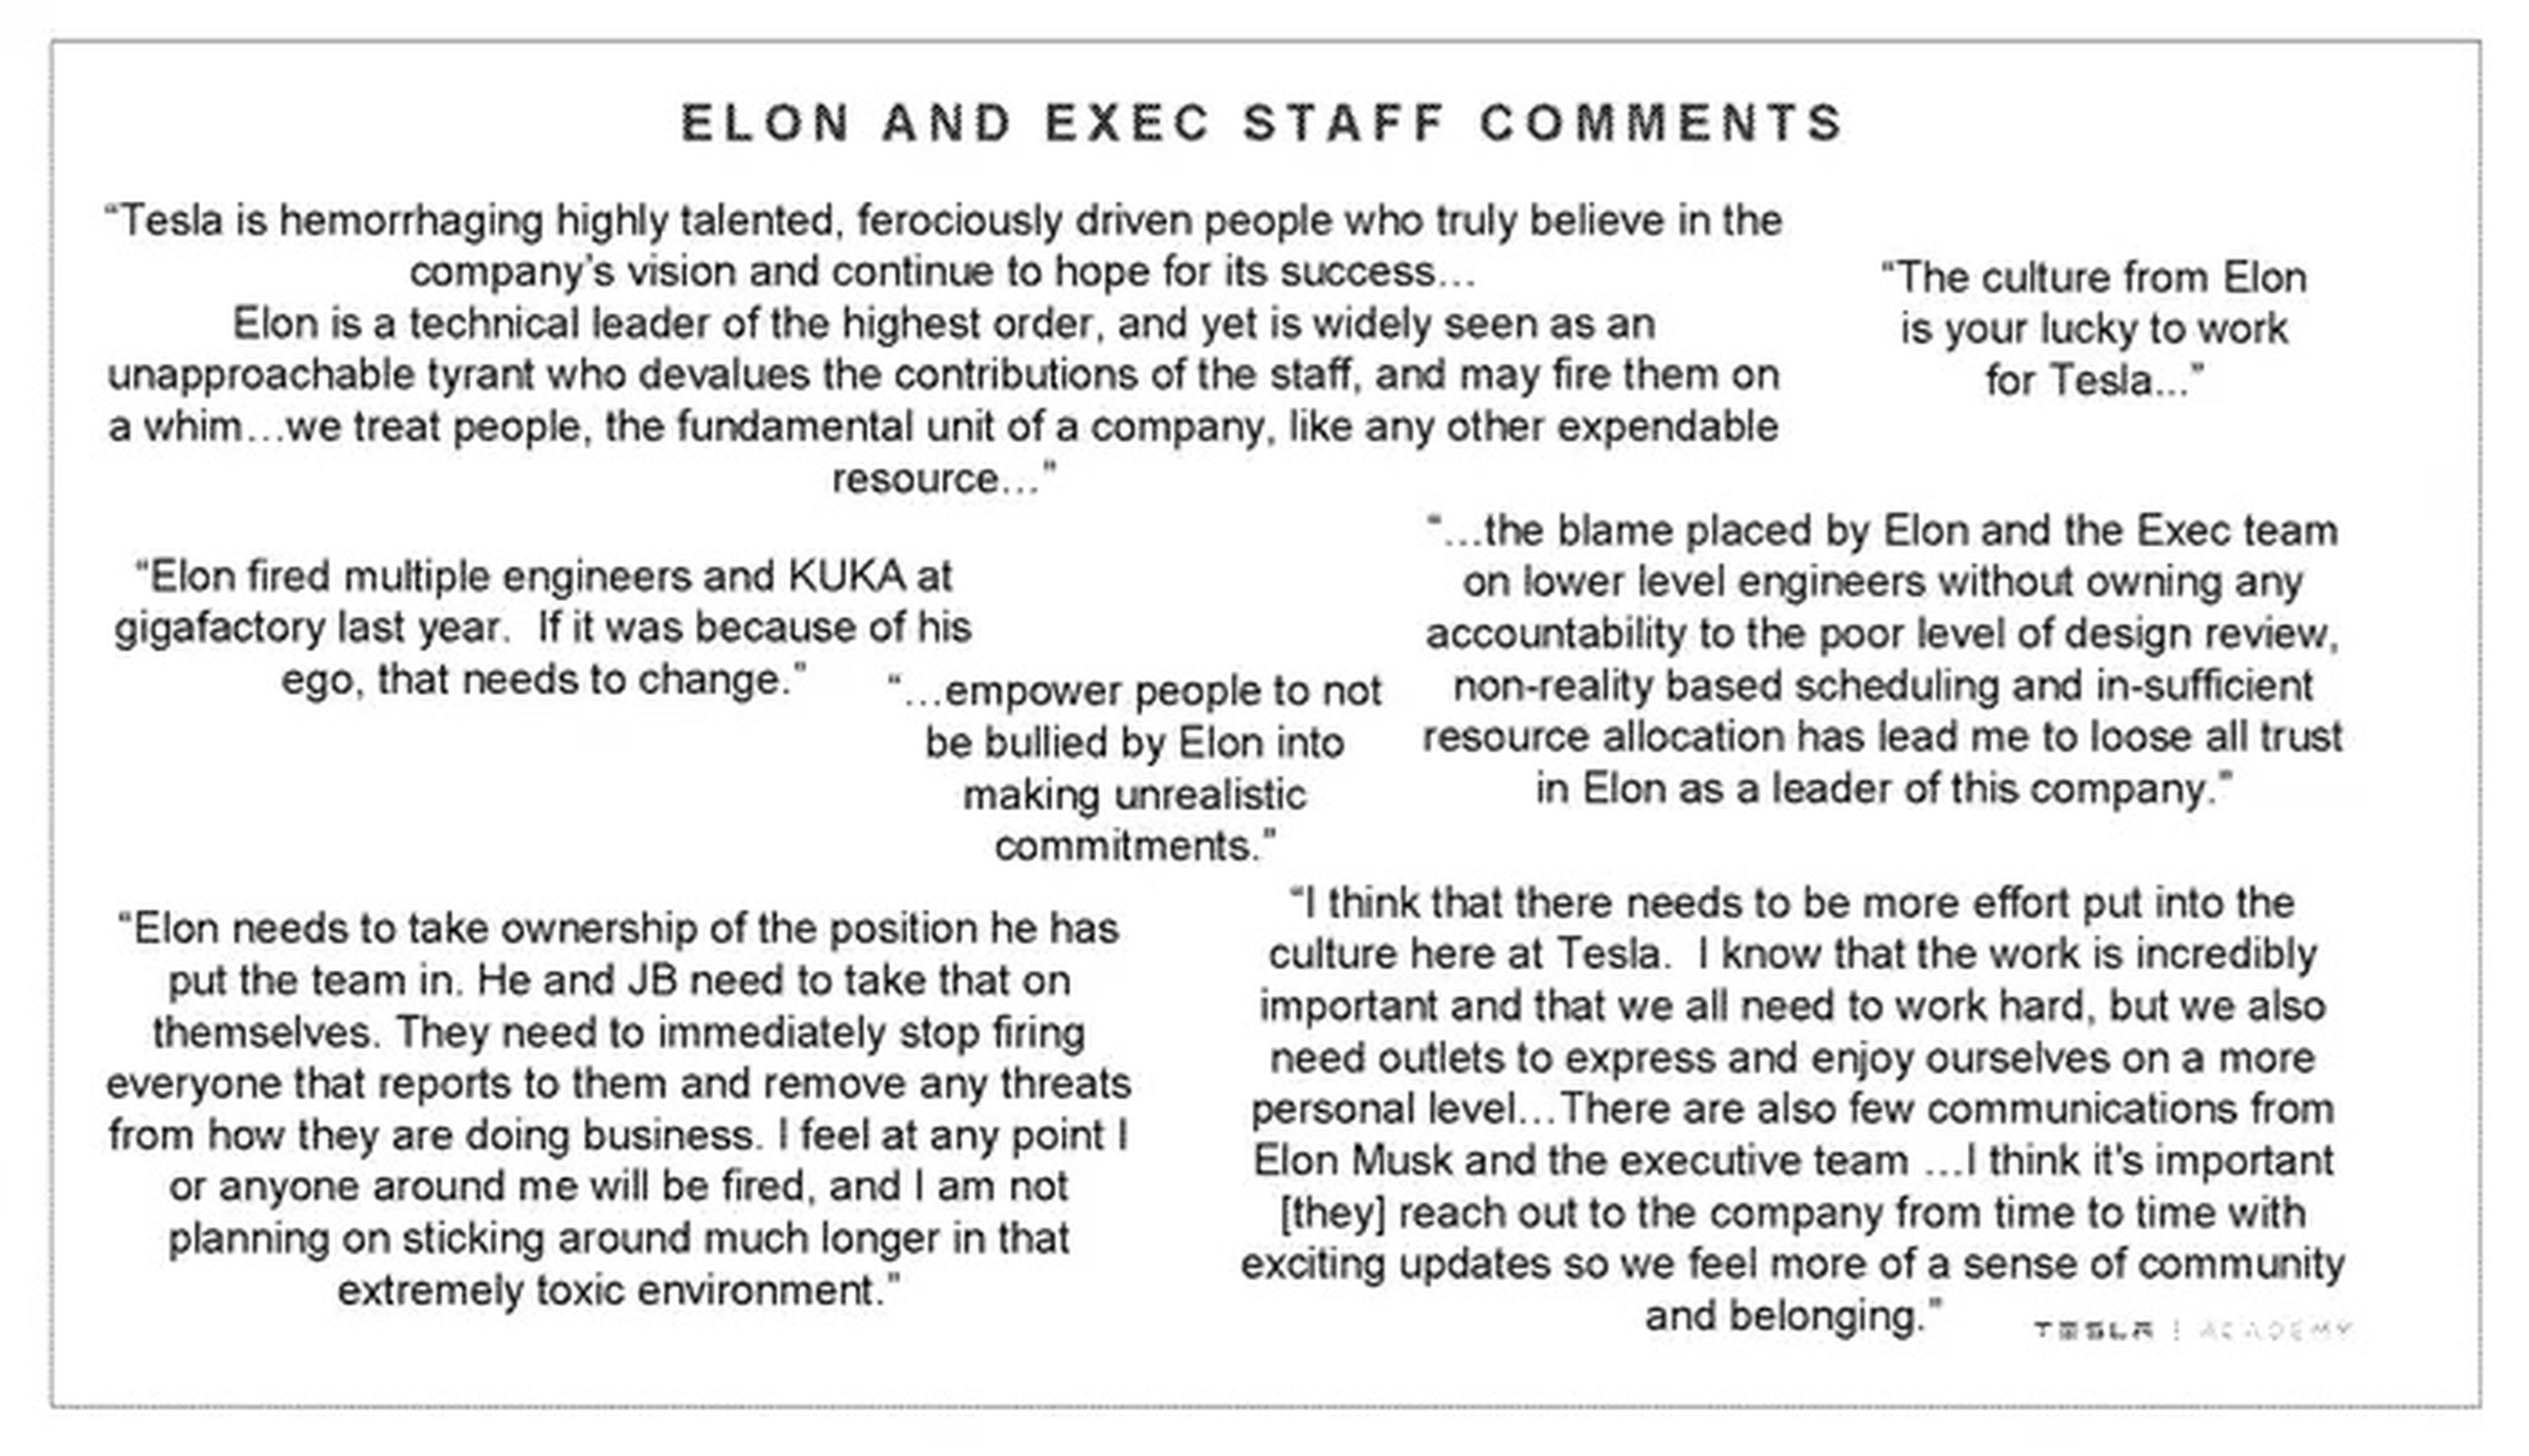 Parte de la encuesta de empleados de Tesla de 2018 que muestra los comentarios sobre "Elon y el personal ejecutivo".